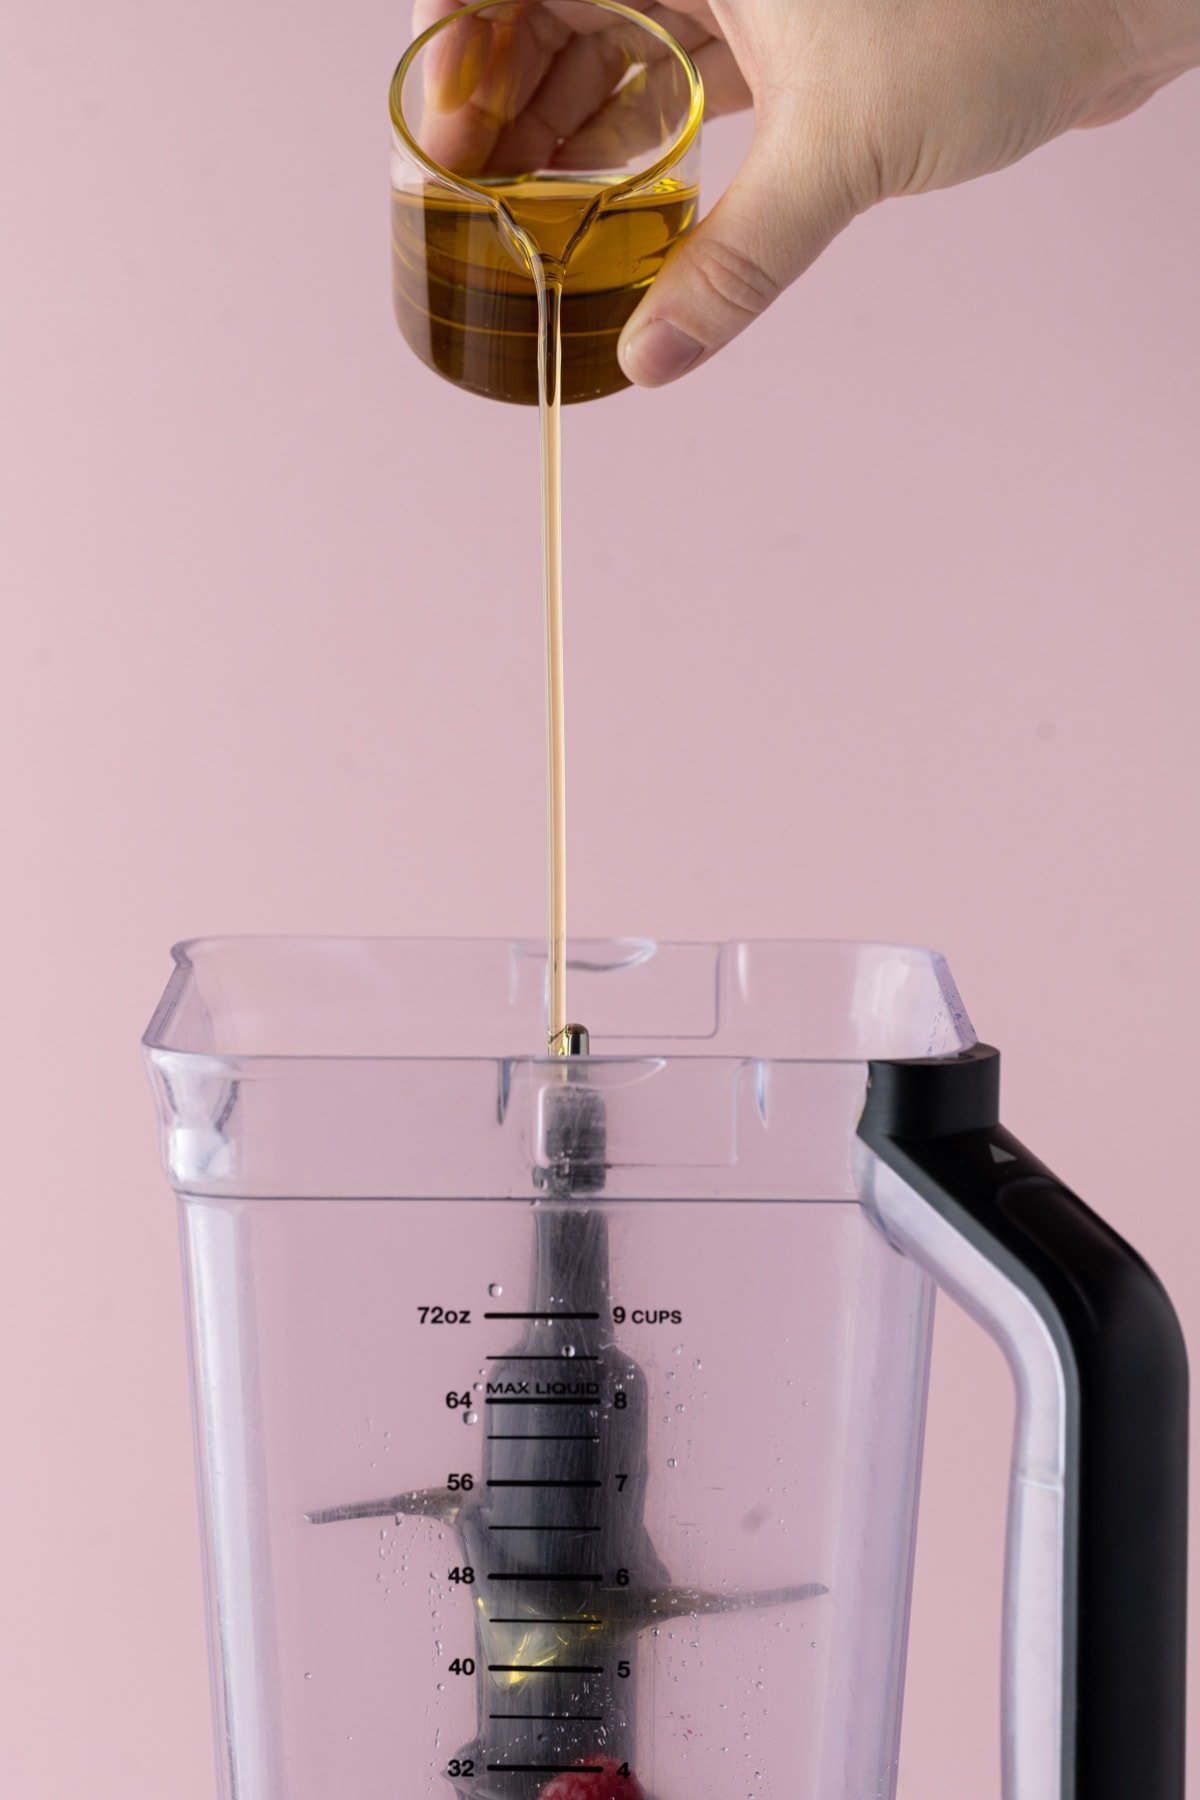 Adding olive oil to a blender to make vinaigrette